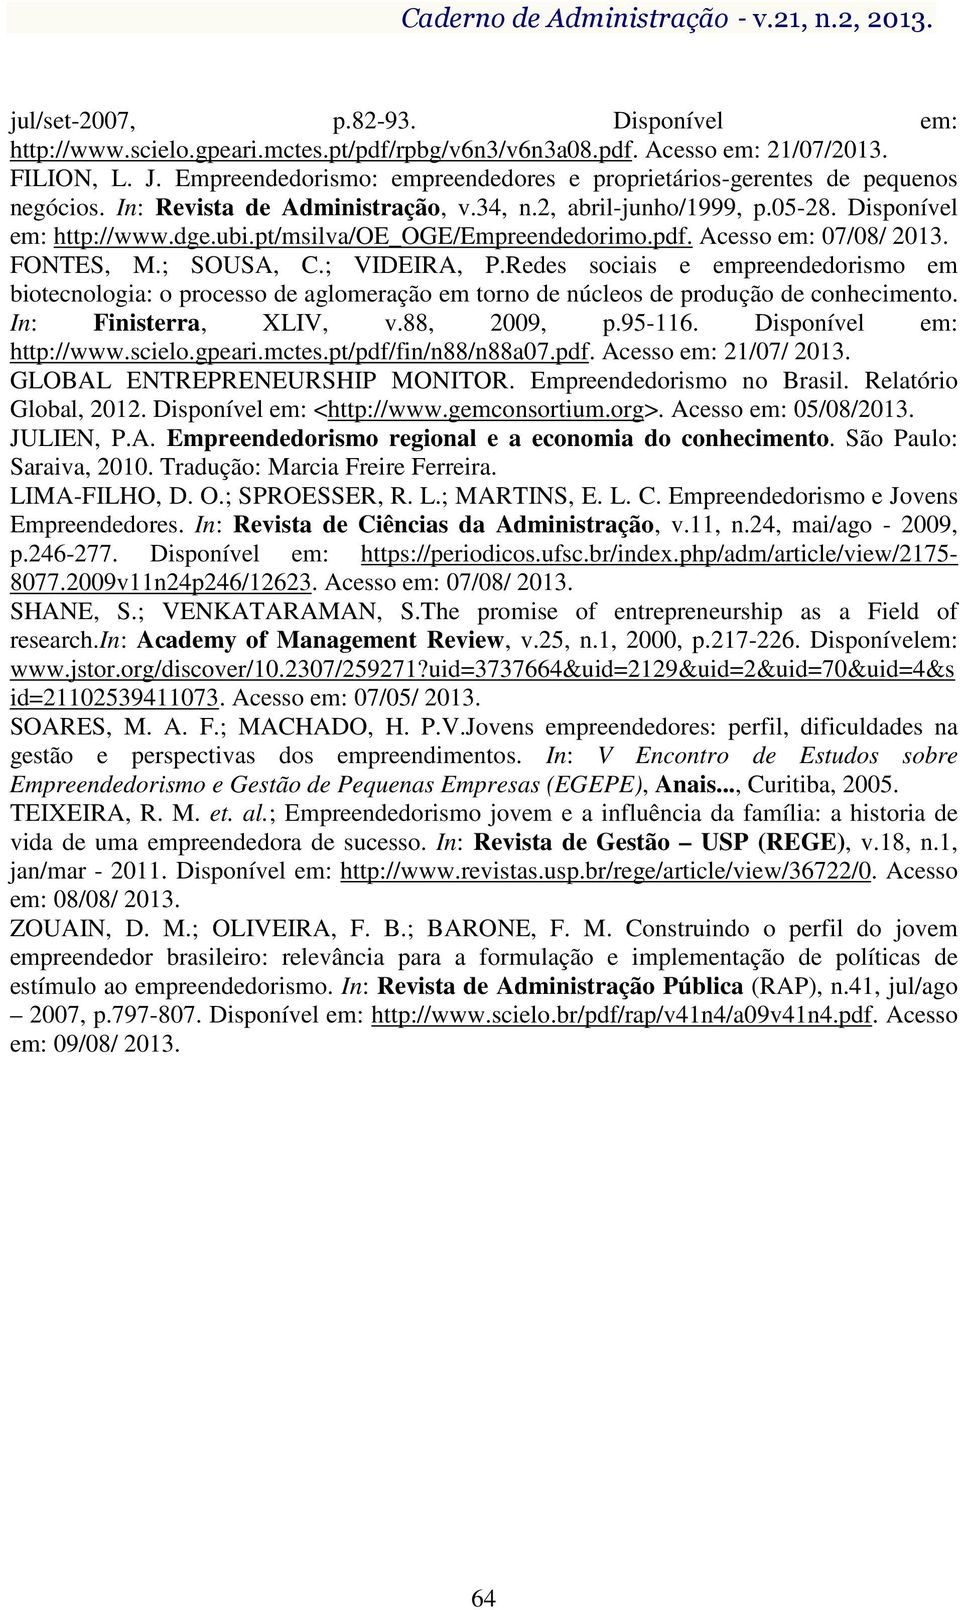 pt/msilva/oe_oge/empreendedorimo.pdf. Acesso em: 07/08/ 2013. FONTES, M.; SOUSA, C.; VIDEIRA, P.